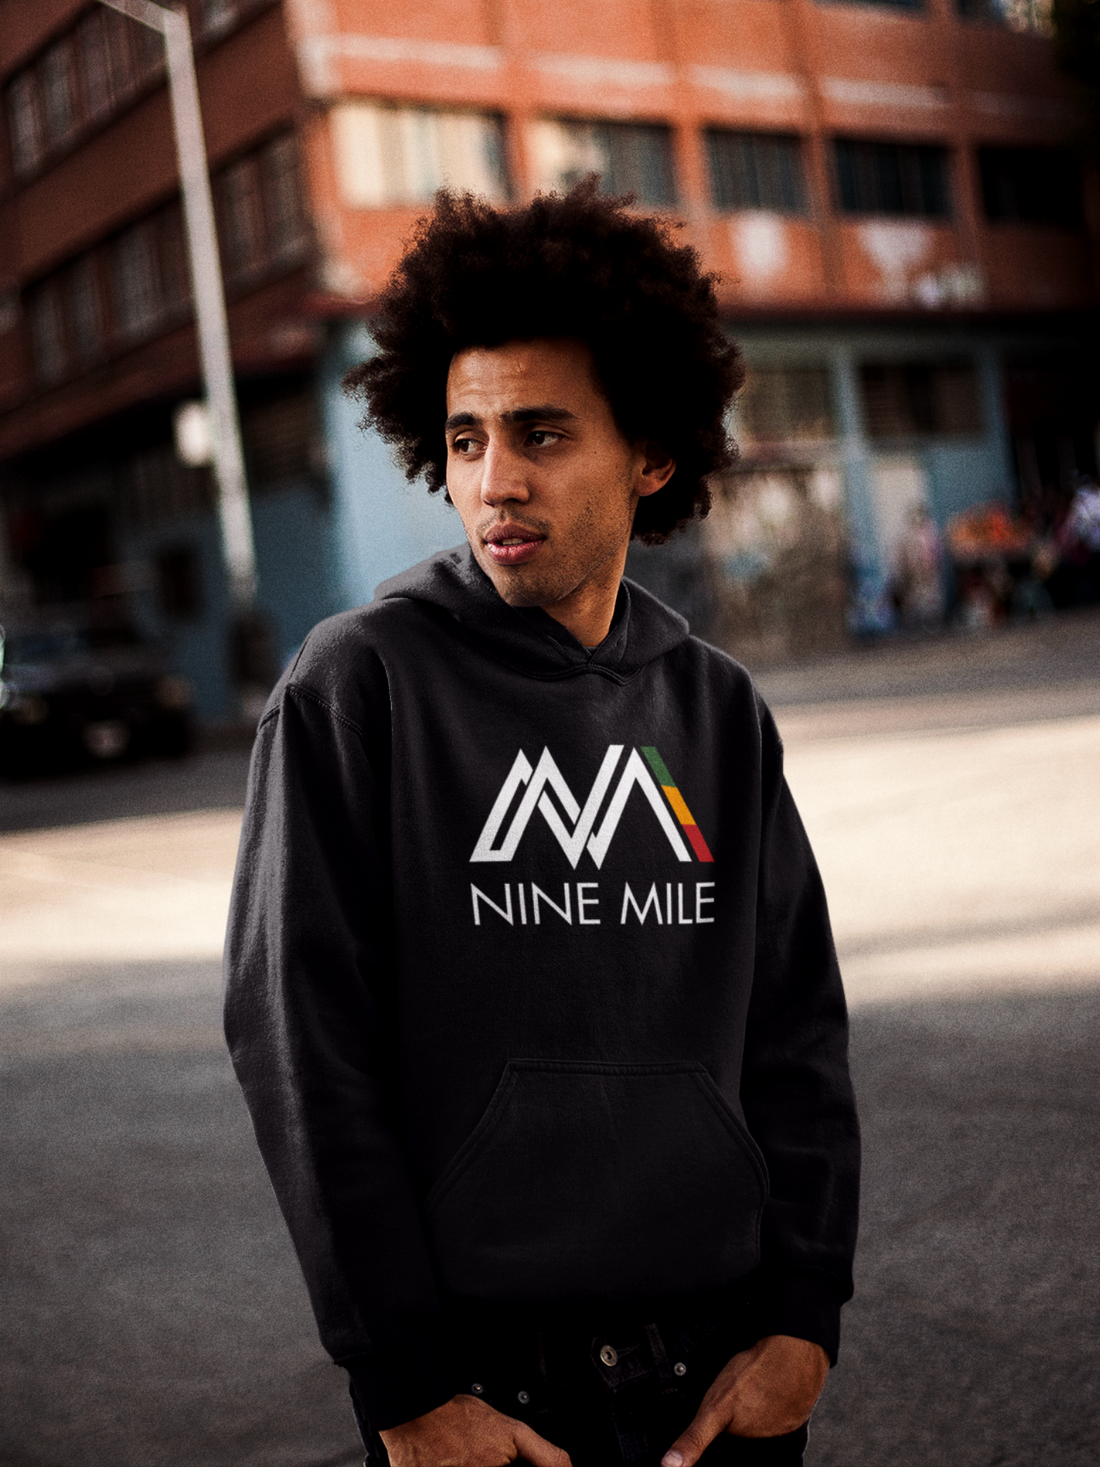 Nine Mile Reggae Vibes Hoodie - Nine Mile Clothing 